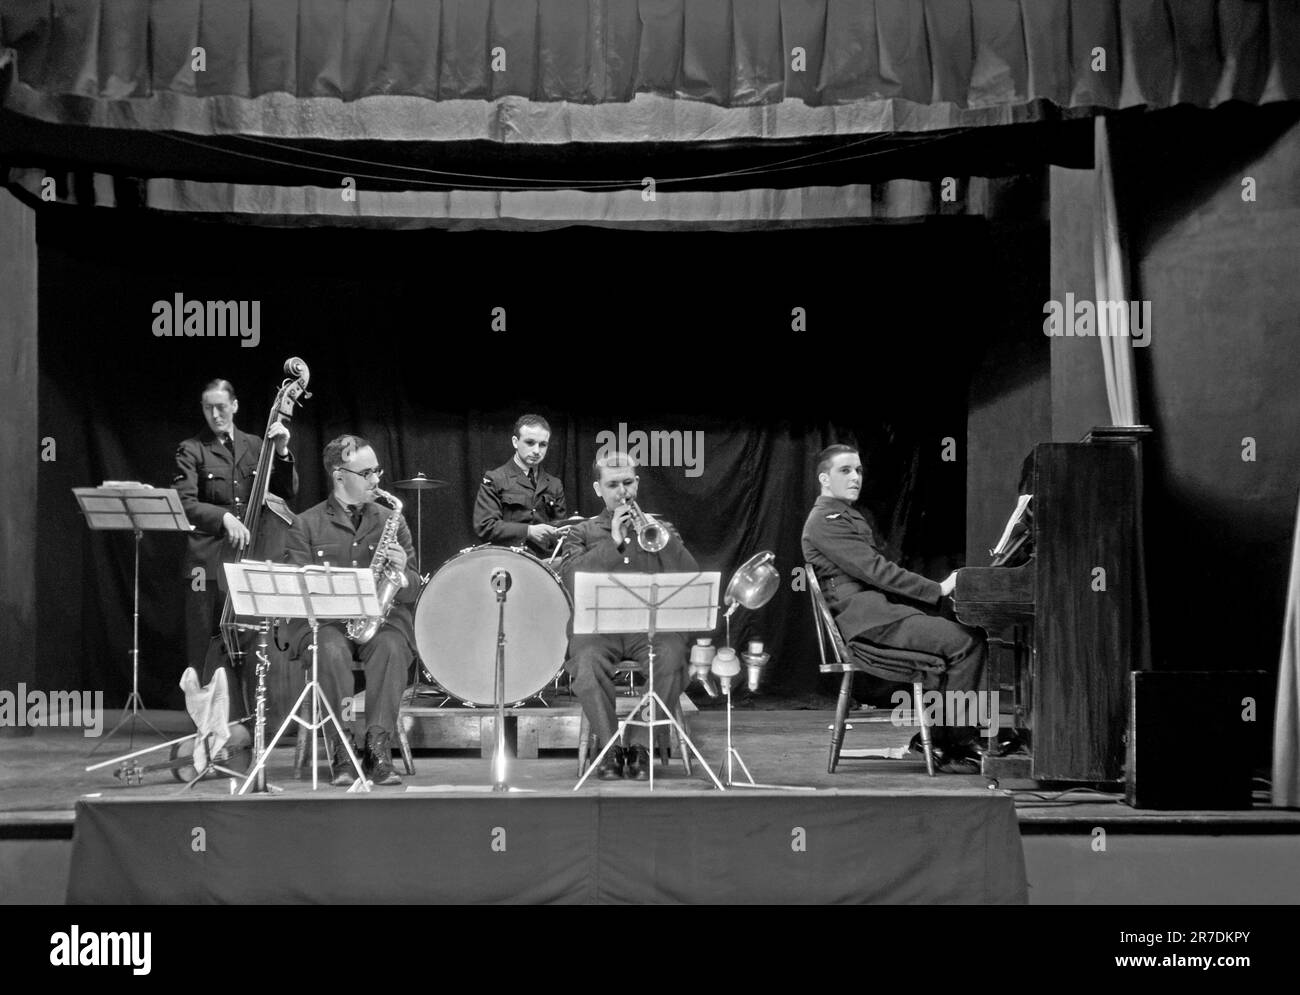 Eine britische fünfköpfige Militärtanzband, die Nummer 2 Station Band, Farnborough auf der Bühne am 5. Dezember 1940. Farnborough, Hampshire, England, Großbritannien, war die Heimat des Royal Aircraft Establishment (RAE) und die Spieler tragen ihre RAF-Uniformen. Die frühen Tanz- und Swing-Bands hatten ihre Blütezeit in Großbritannien zwischen den 1920er und 30s Jahren. Bands spielten in Tanzsälen und Hotelballsälen. Sie spielten melodische, gute Musik und einzelne Spieler spielten in mehreren Bands. Dieses Bild ist von einem alten Glasnegativ – einem alten 1940er-Foto. Stockfoto